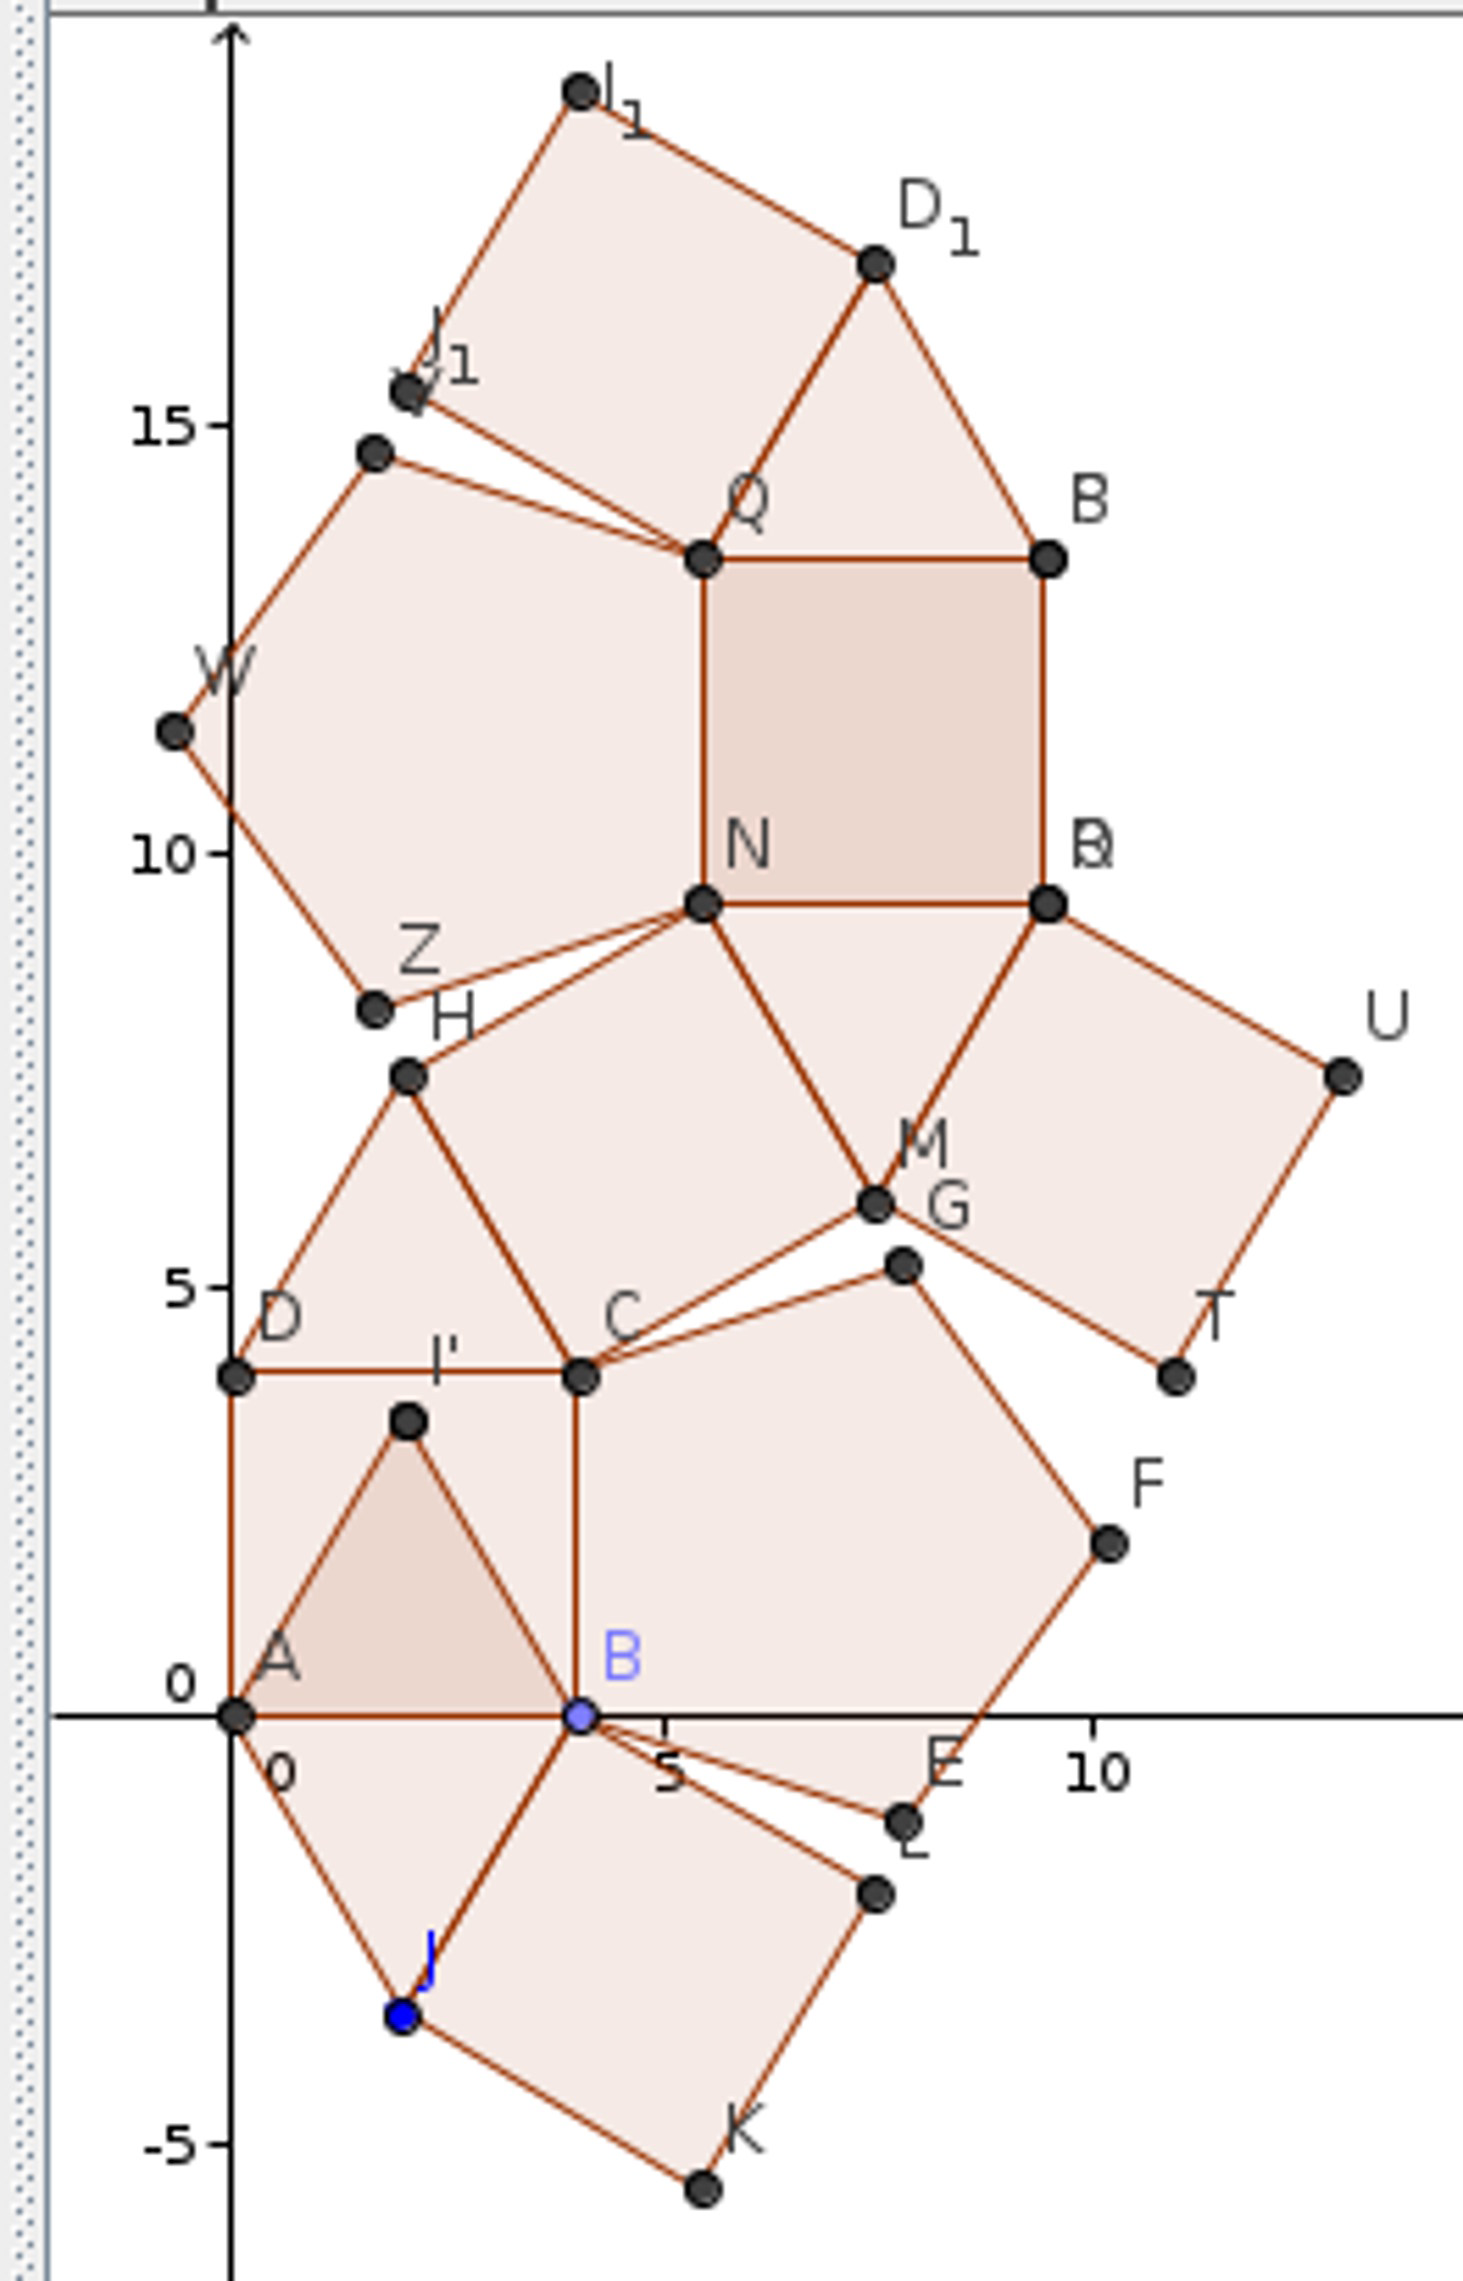 Rhombicosidodecahedron net